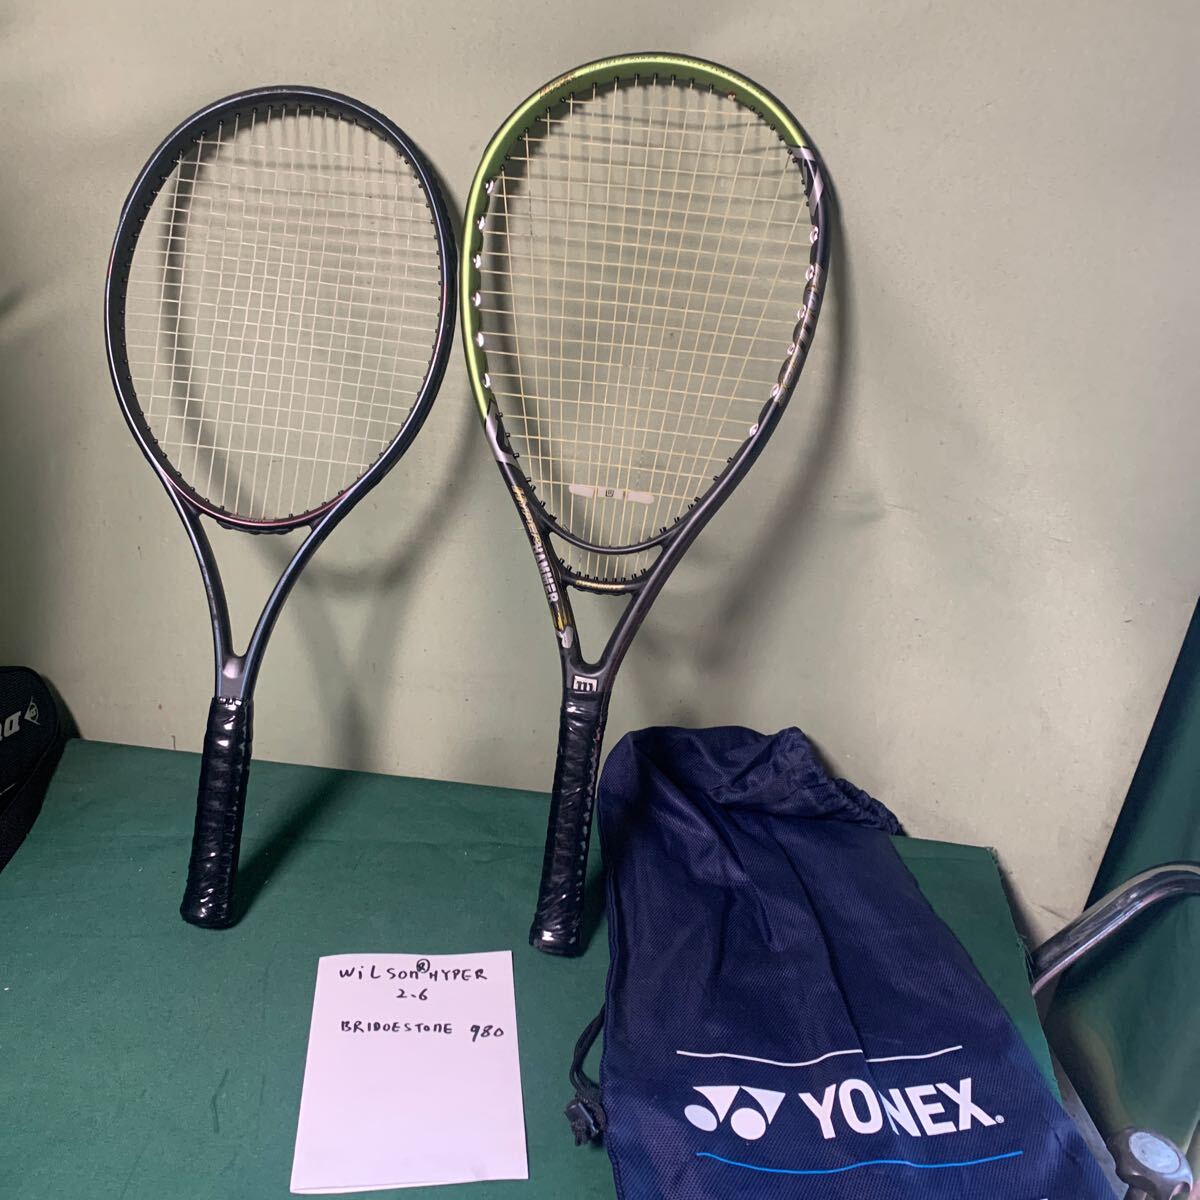 テニスラケット Wilson 硬式テニスラケット HYPER 2.6とBRIDGESTONE 980 中古 現状品の画像1